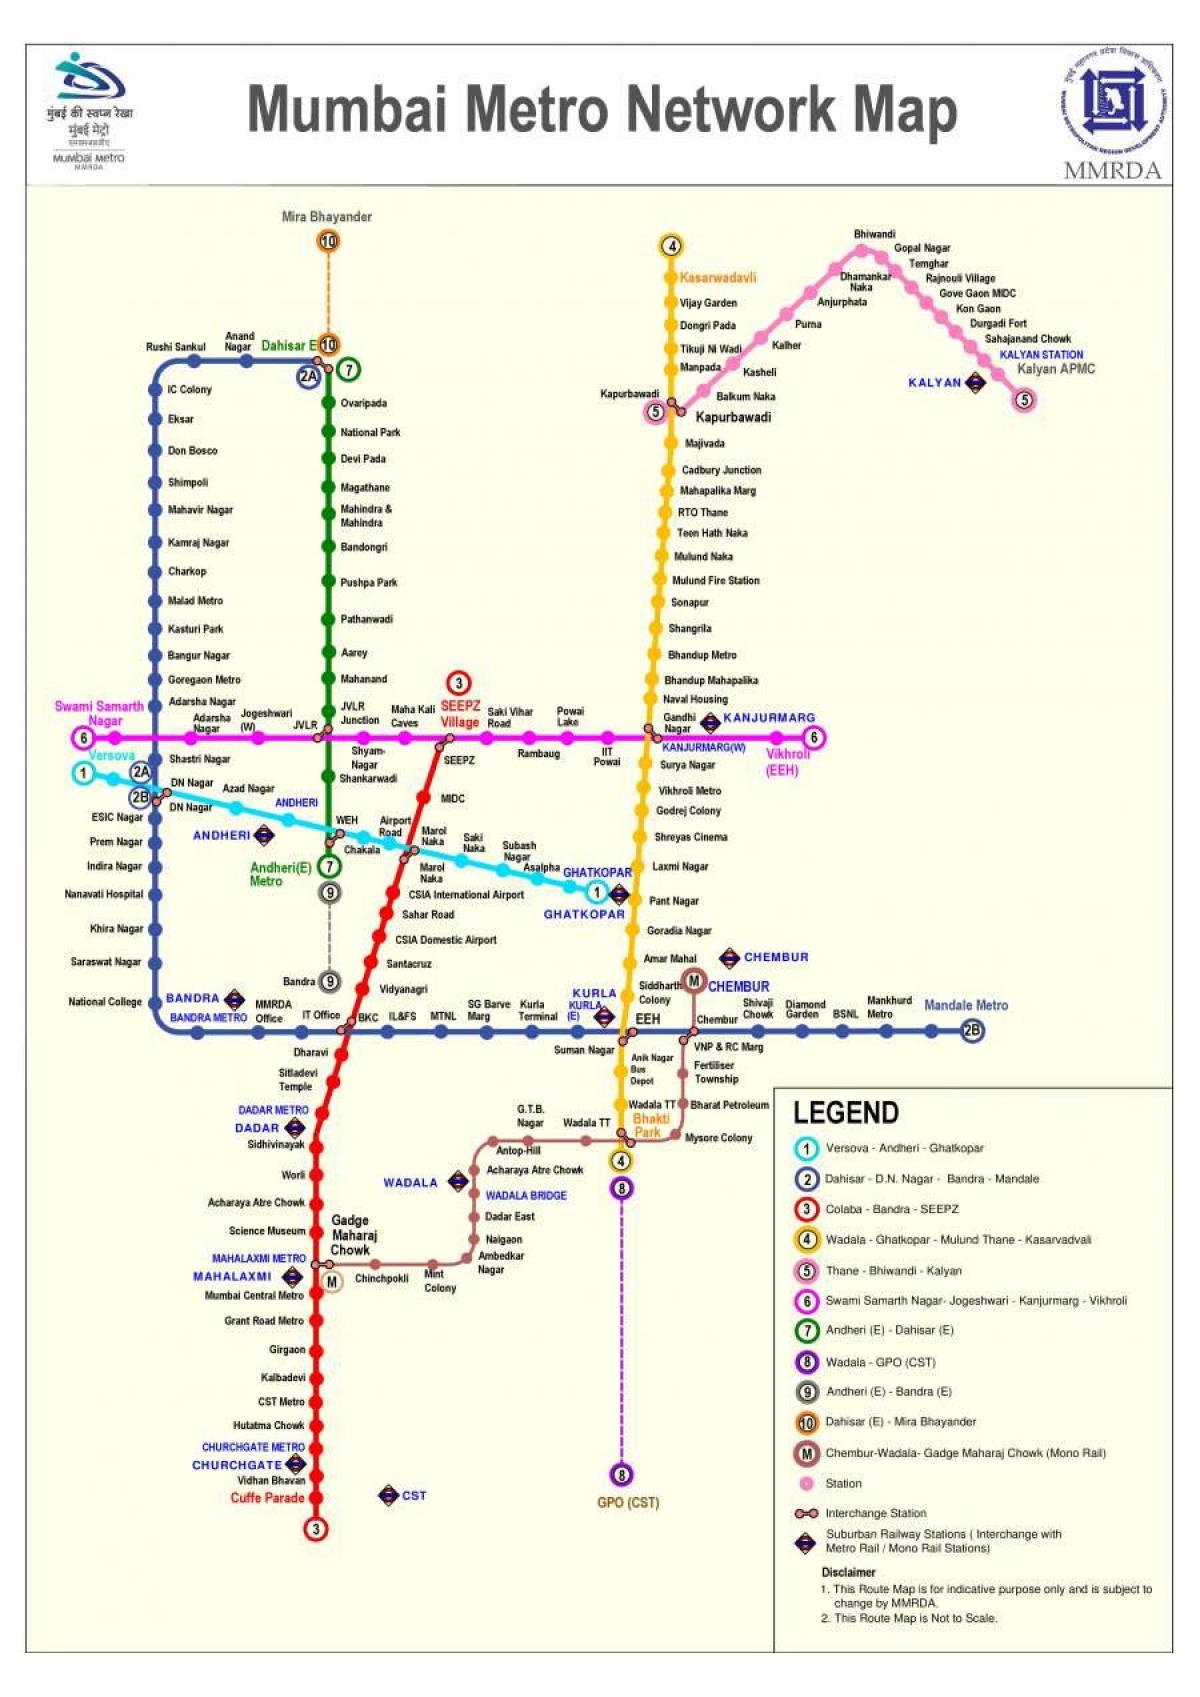 ムンバイ、ボンベイの地下鉄駅マップ